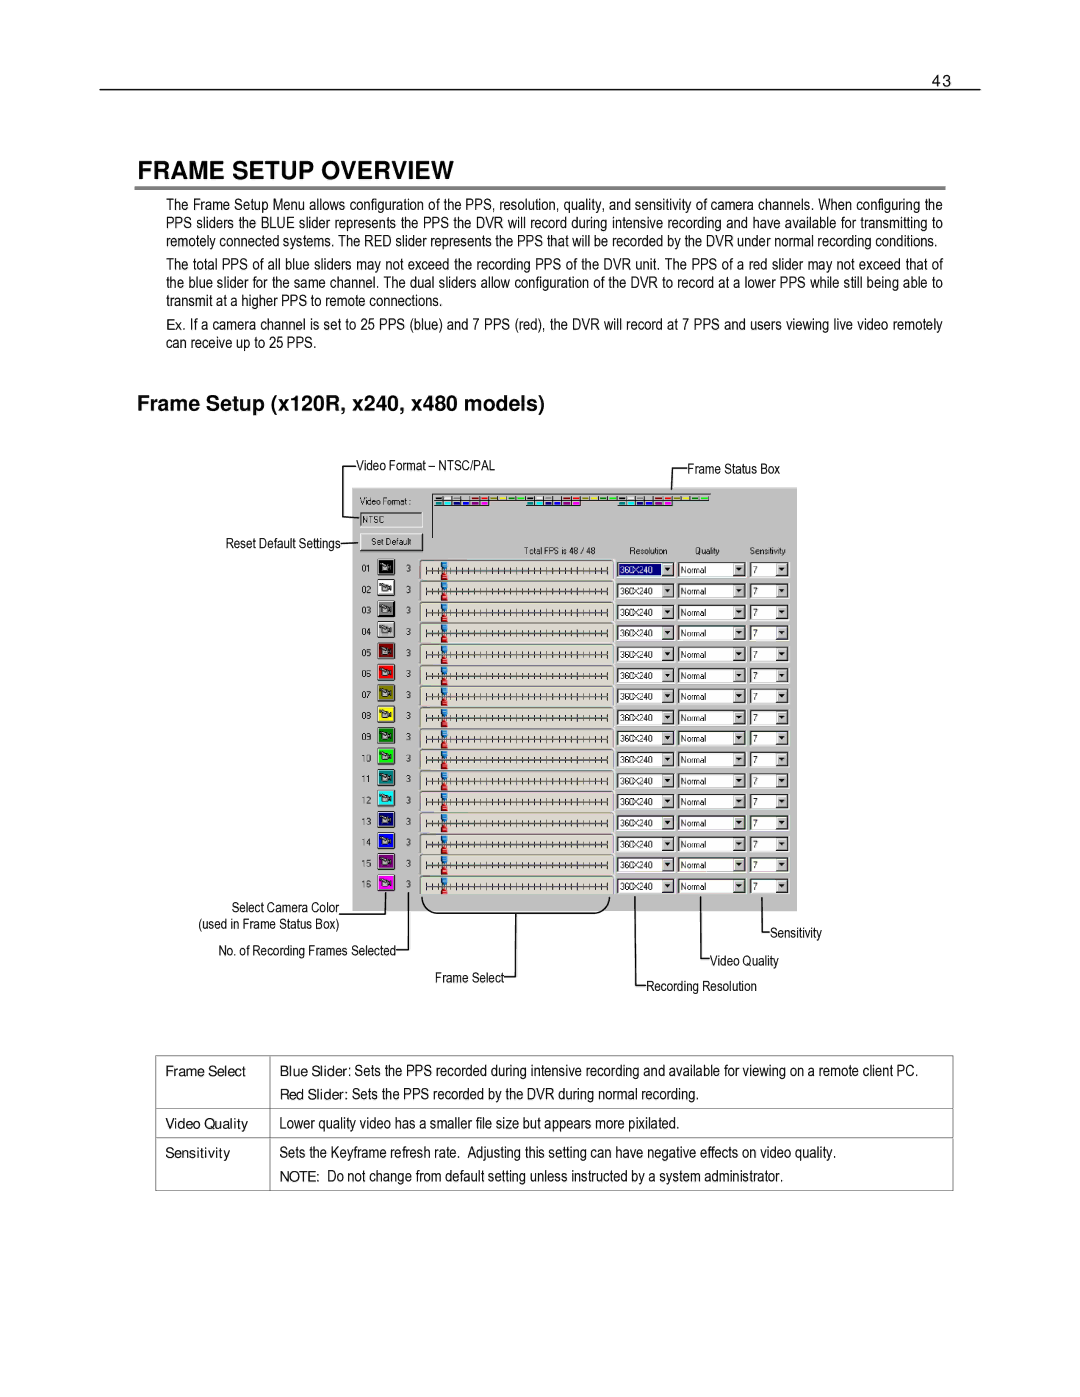 Toshiba HVR8-X, HVR32-X, HVR16-X user manual Frame Setup Overview, Frame Setup x120R, x240, x480 models 